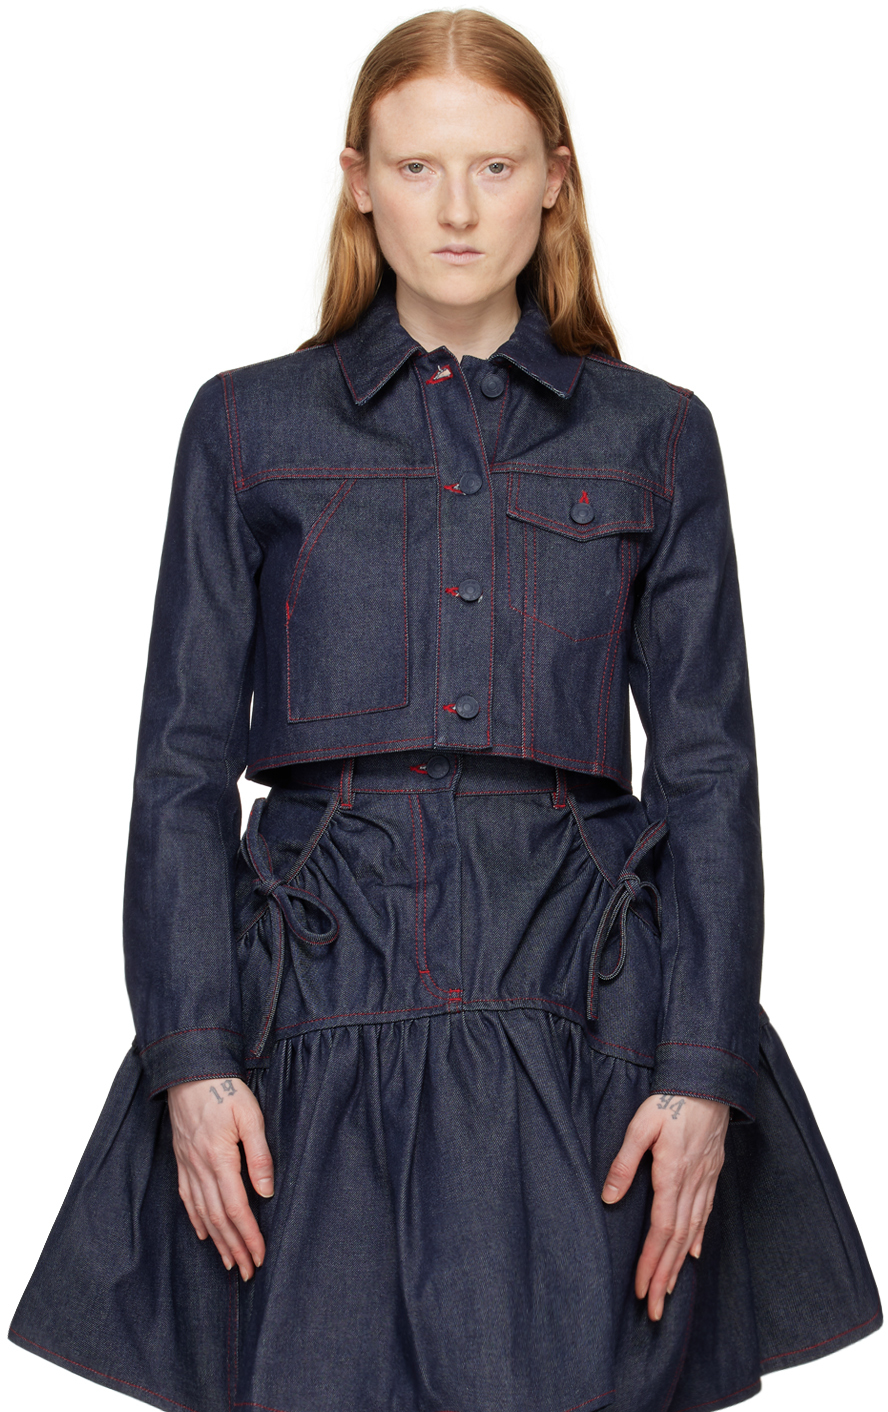 Джинсовая куртка цвета индиго Gracie Cecilie Bahnsen джинсовая куртка h